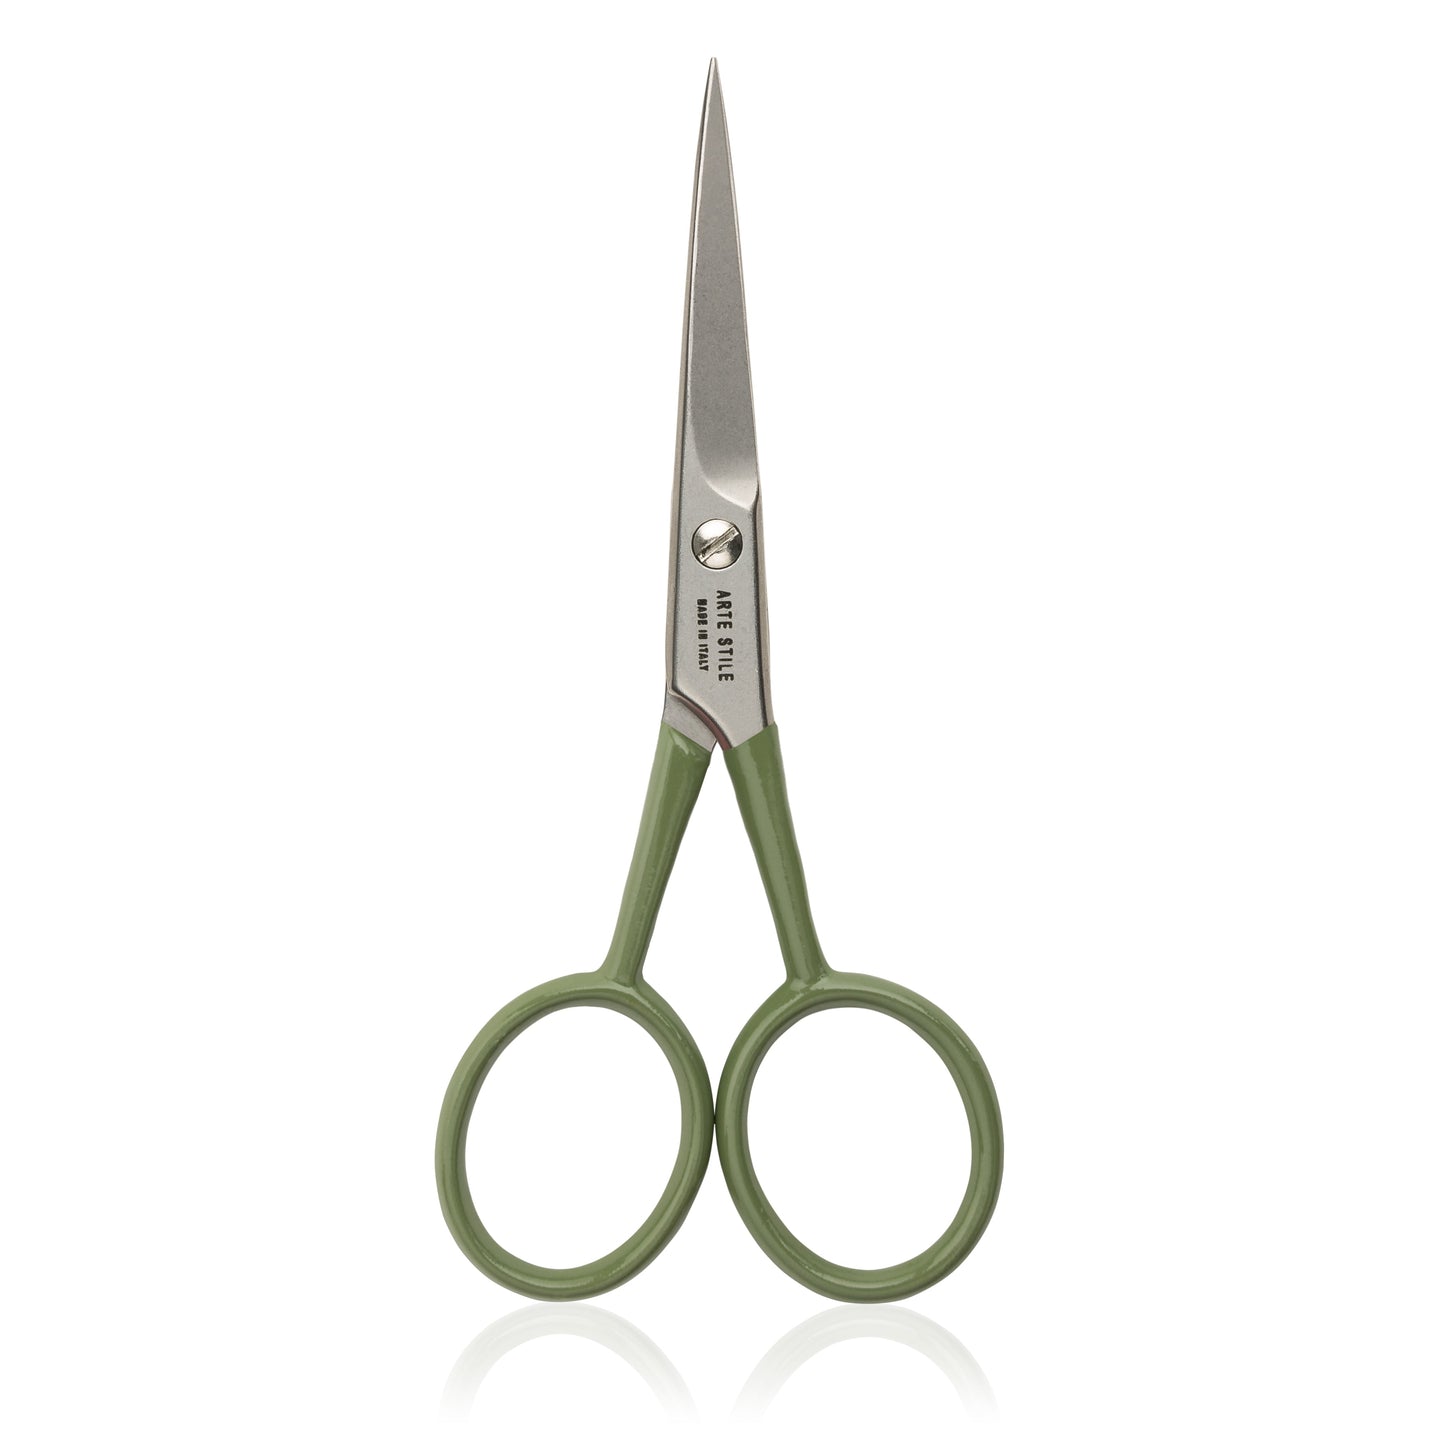 Slant Tip Tweezers + Brow Scissors Kit in Olive